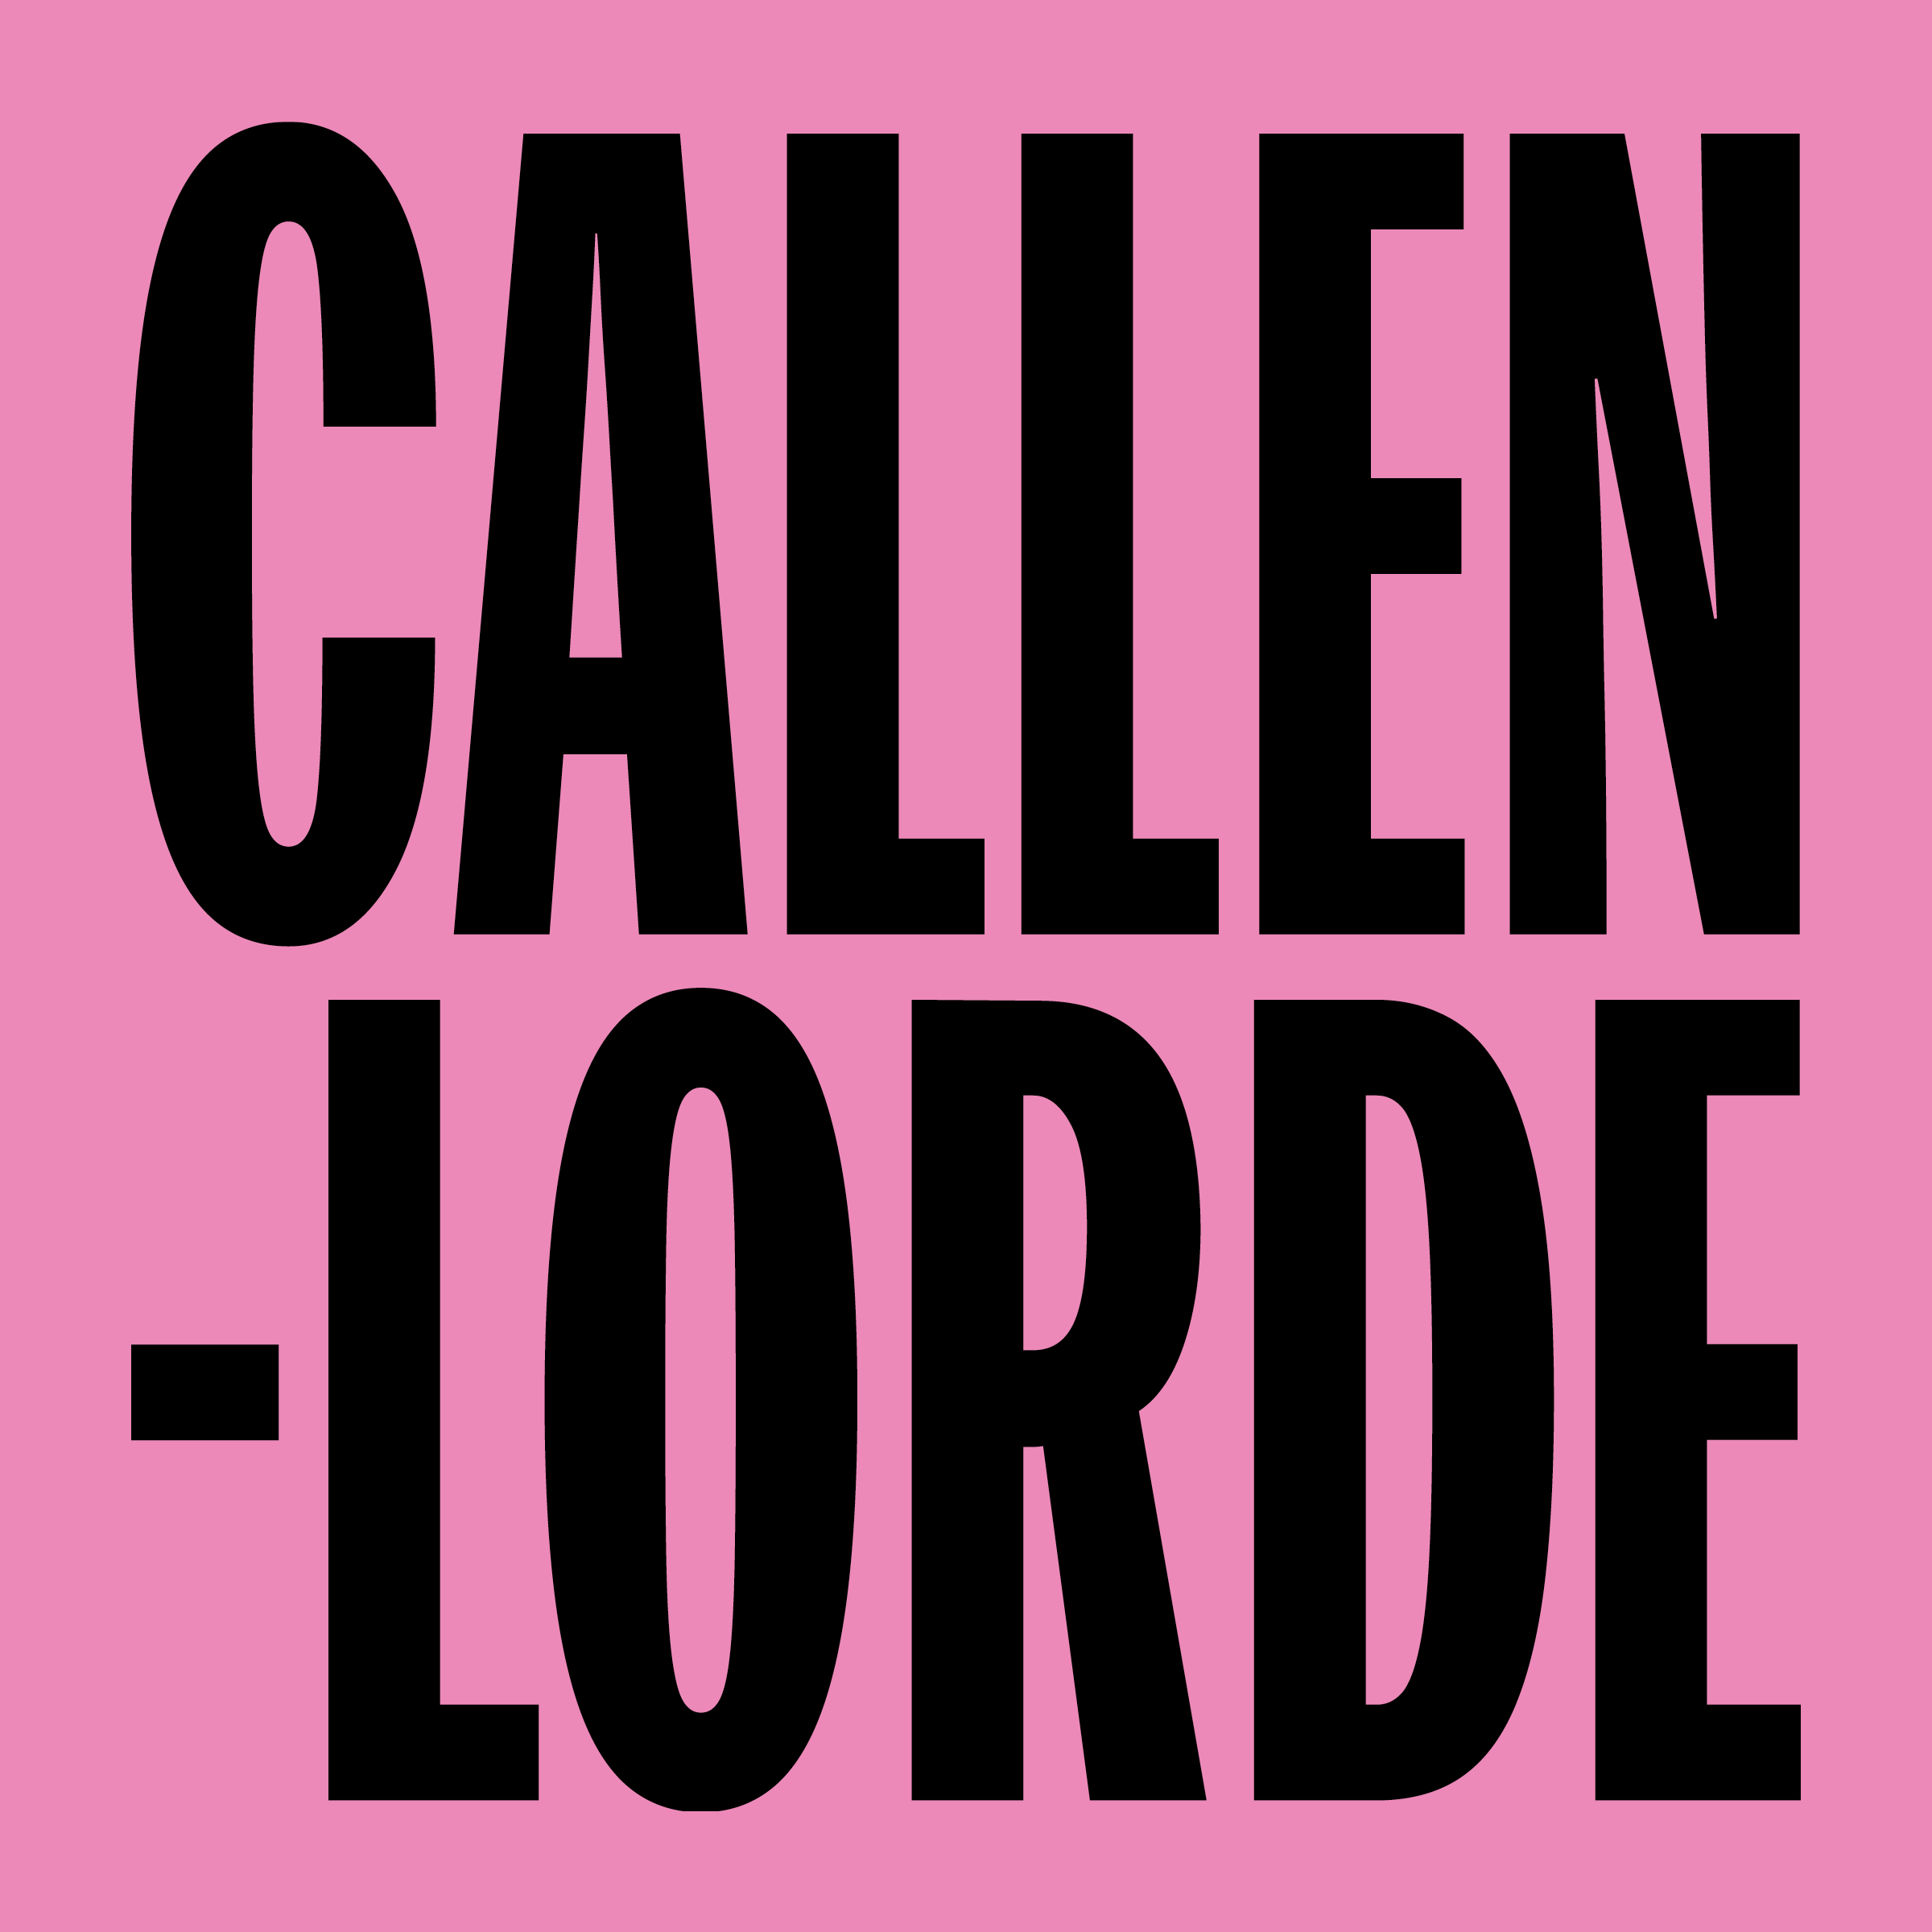 Callen-Lorde Chelsea